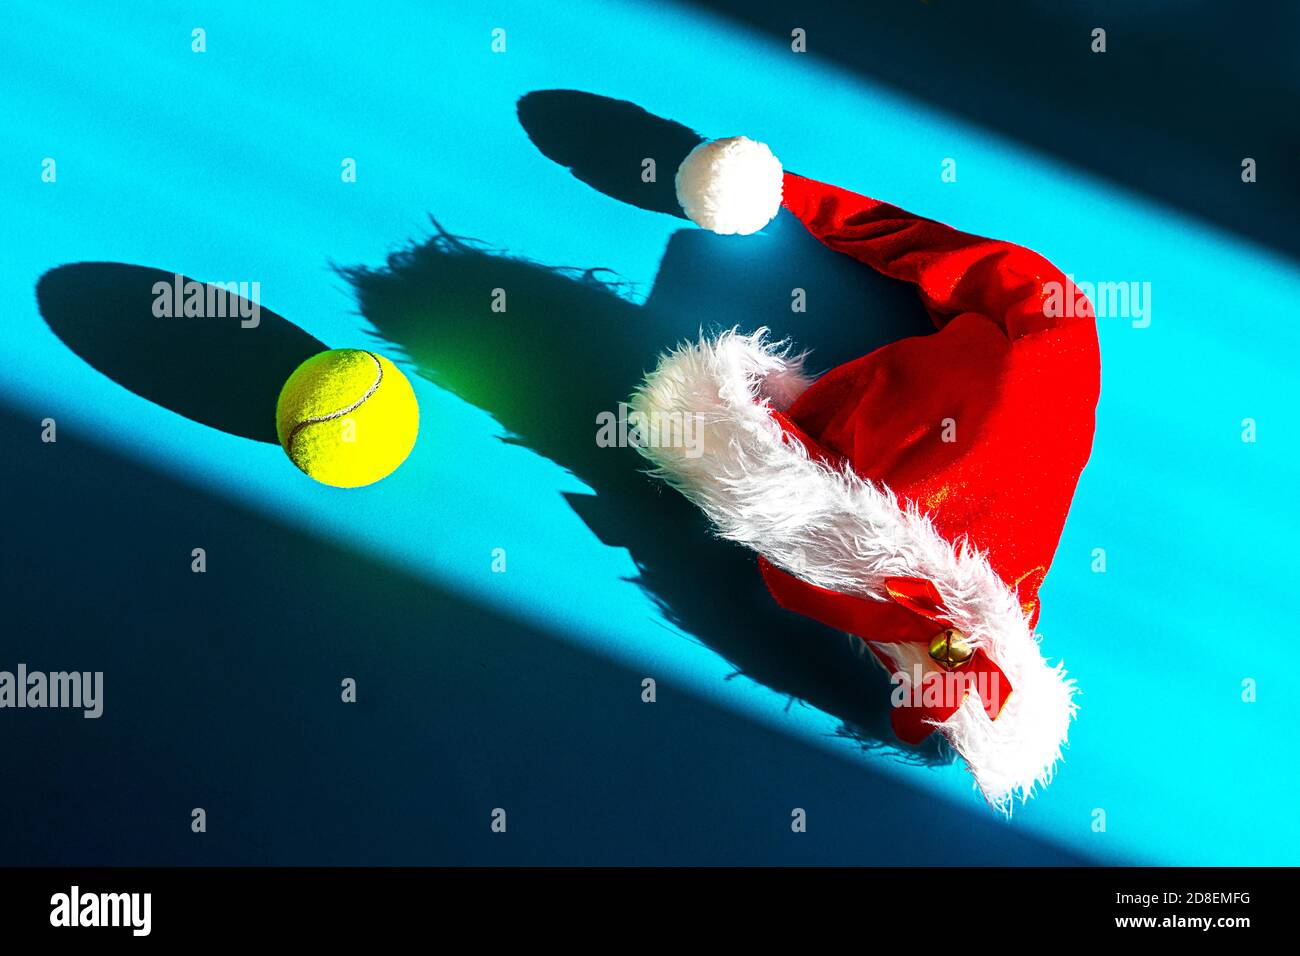 Weihnachtsmann Hut auf Tennisschläger und Ball auf blauem Hintergrund. Frohe Weihnachten und Happy New Year Tennis Konzept. Nahaufnahme, Sport-Lifestyle, lustig. Stockfoto